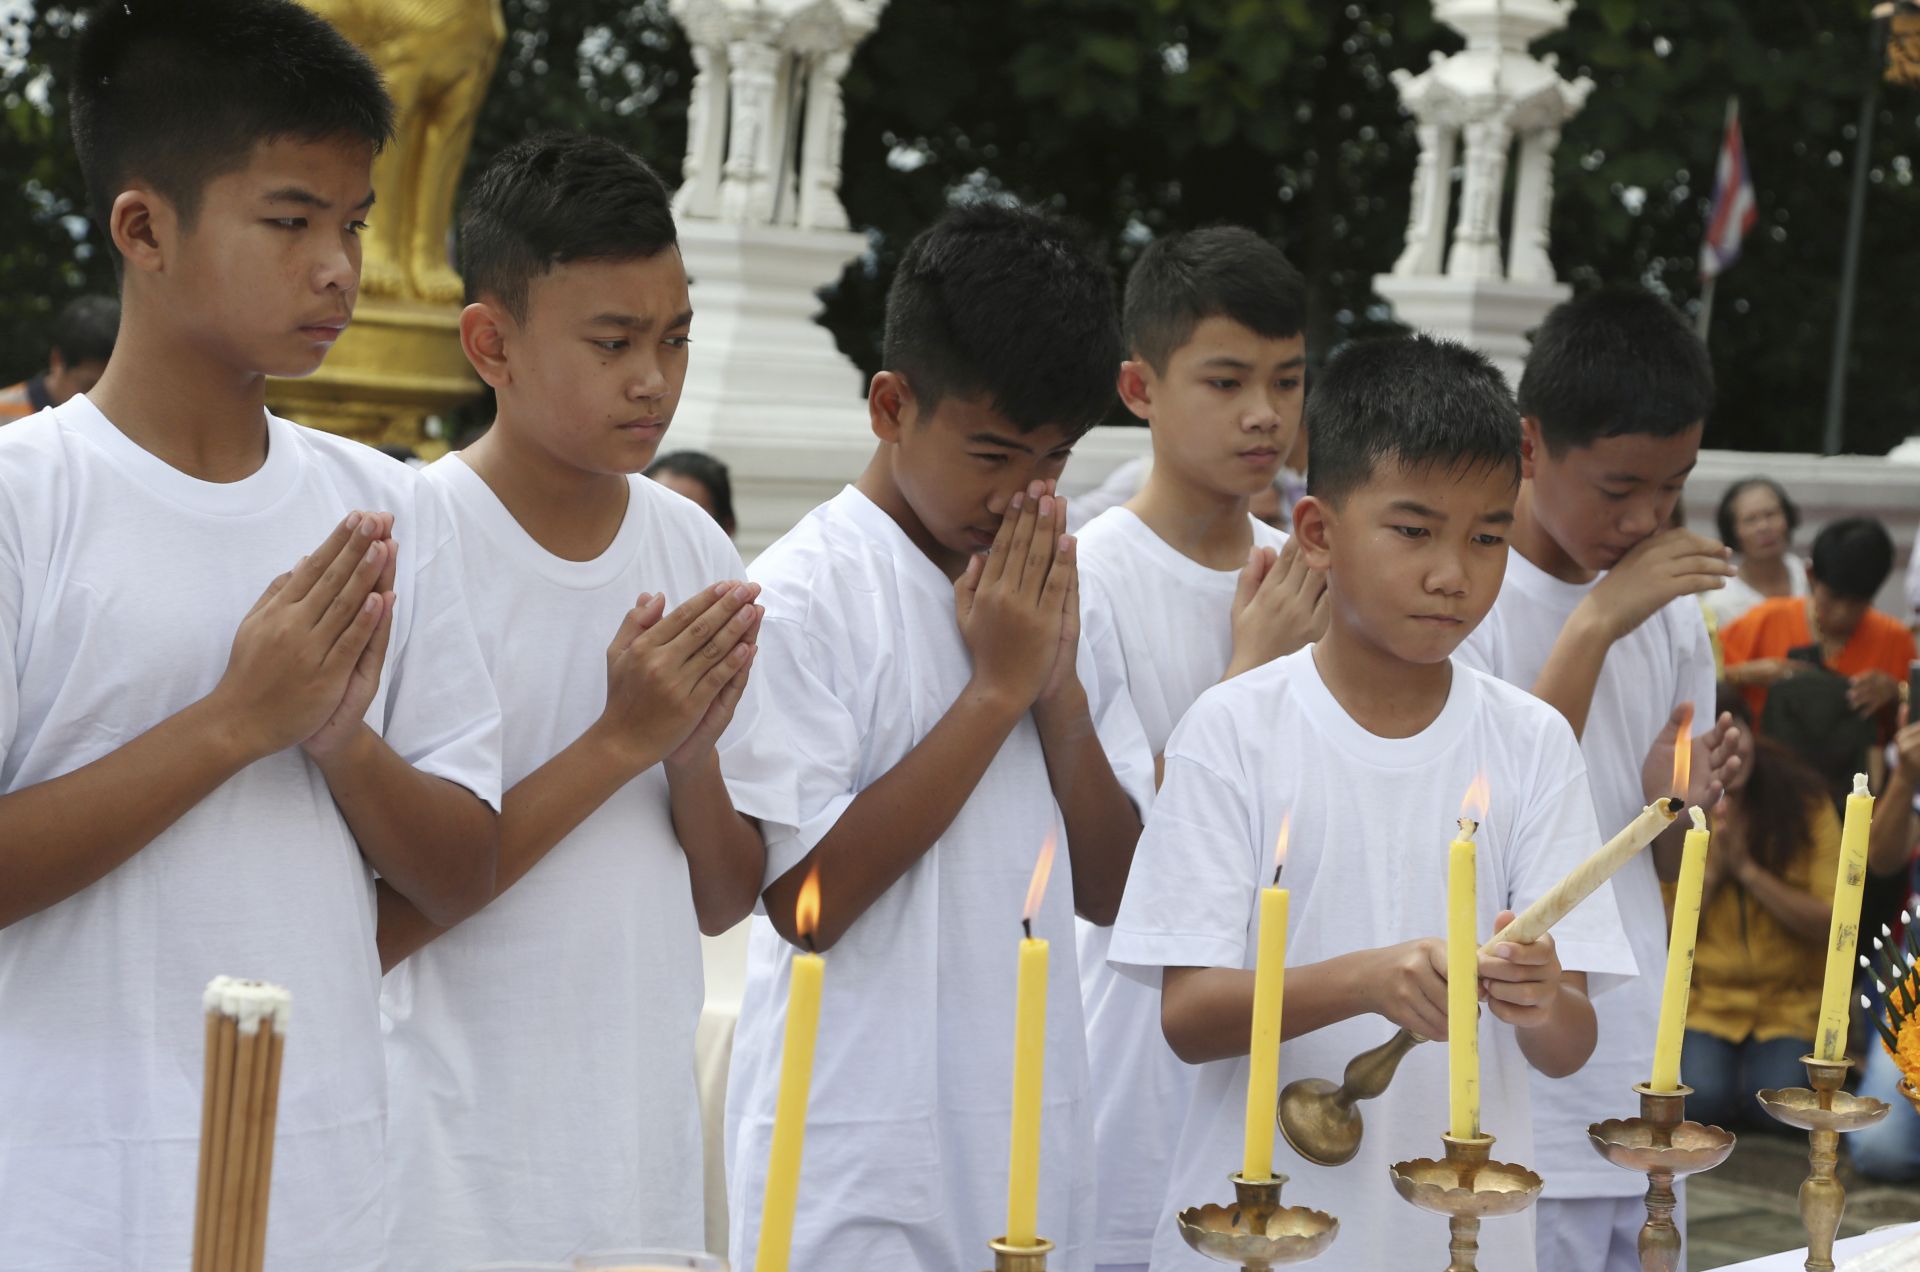 Спасените от пещерата тайландски момчета стават монаси за 9 дни